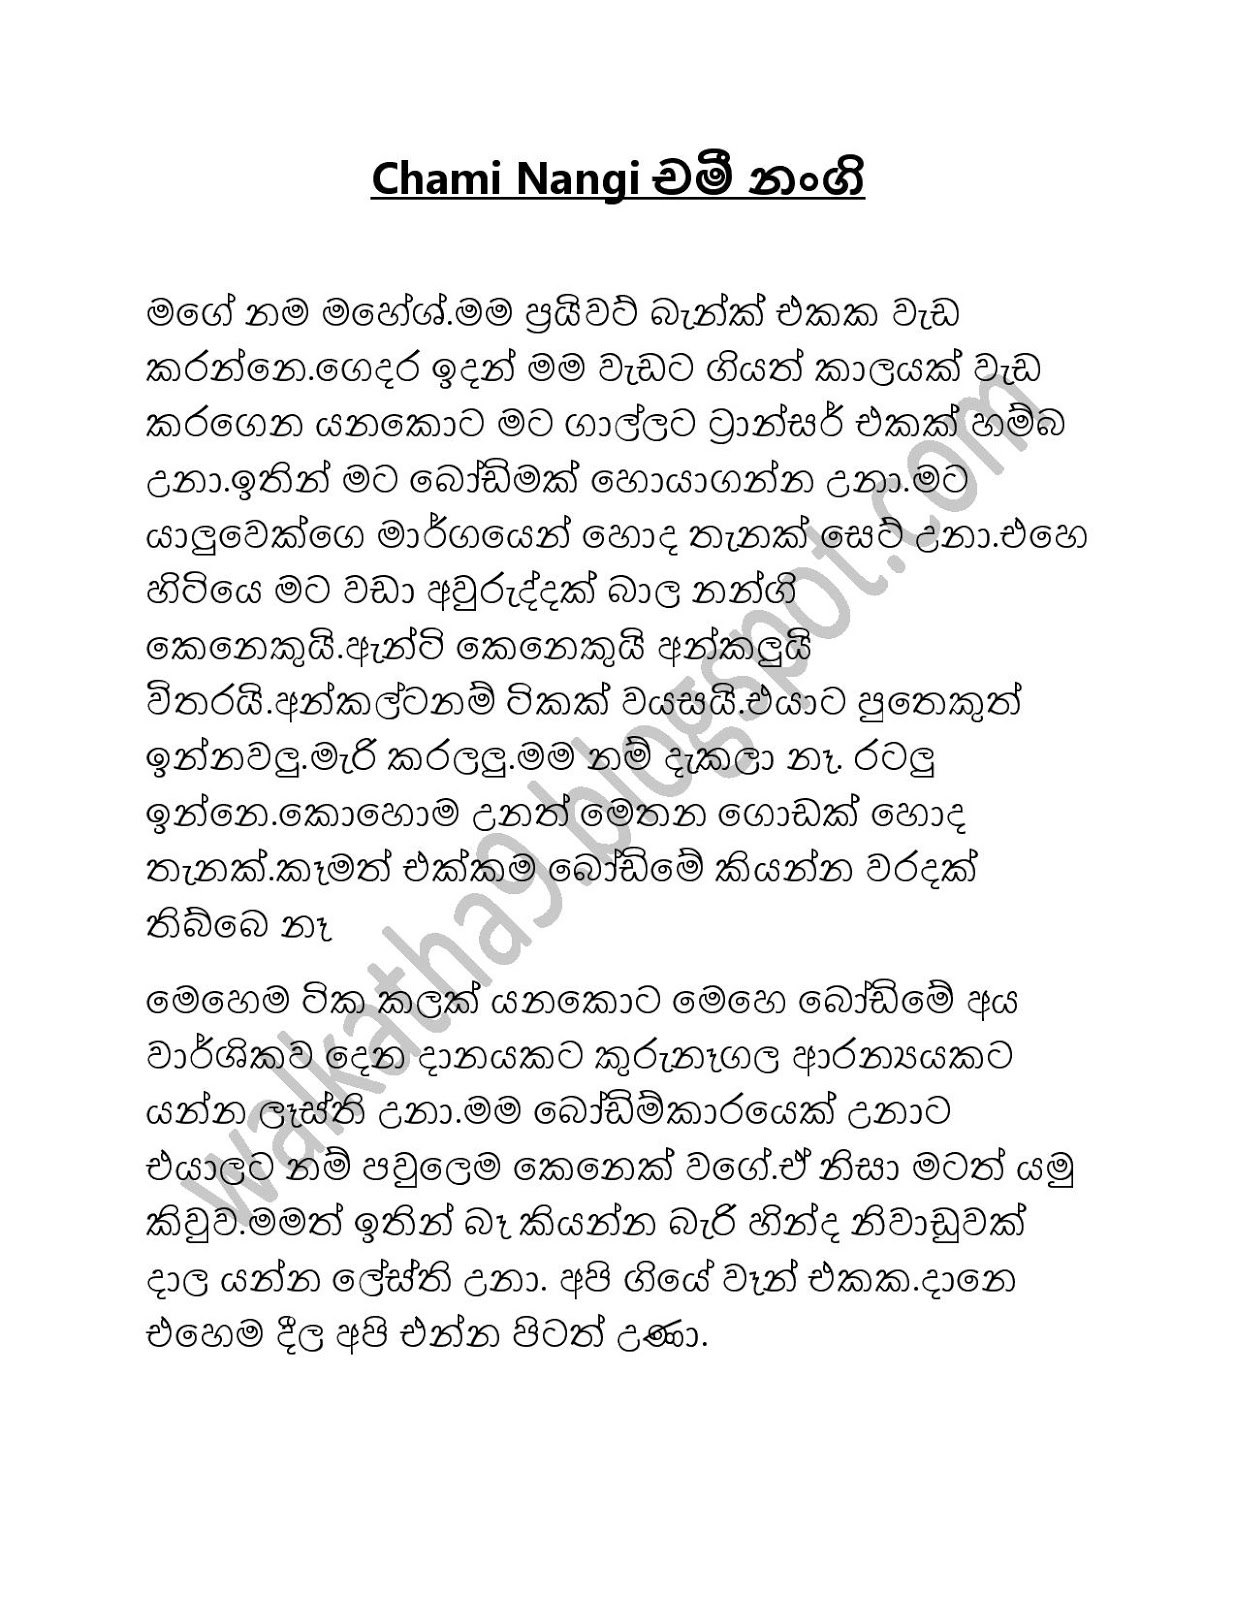 බෝඩිමේ නංගි චමී Bodime Nangi Chamee Sinhala Wela Katha